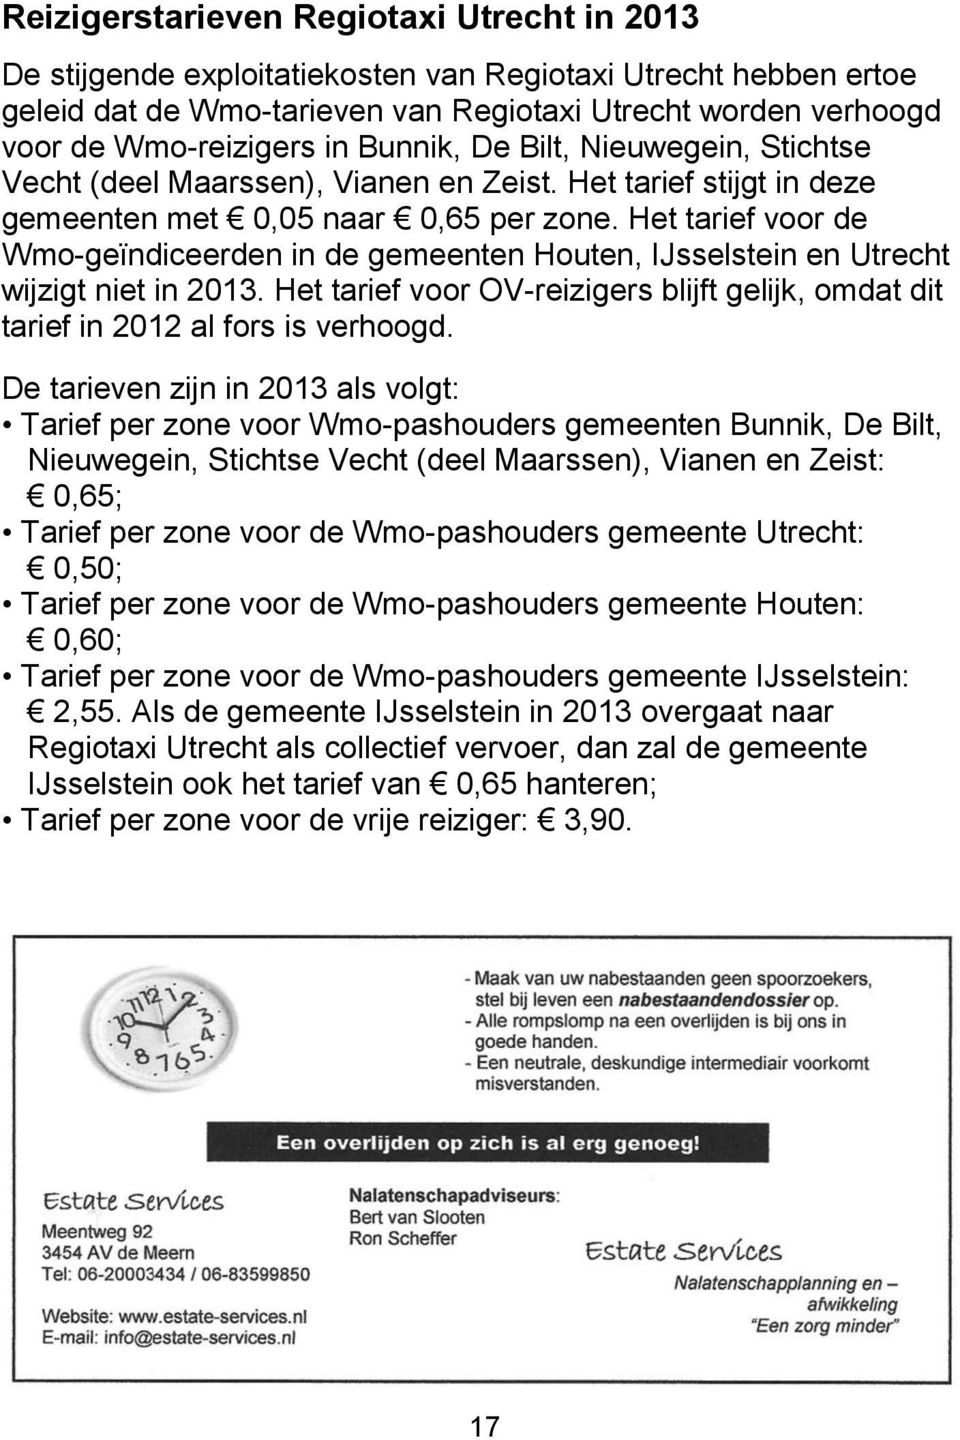 Het tarief voor de Wmo-geïndiceerden in de gemeenten Houten, IJsselstein en Utrecht wijzigt niet in 2013. Het tarief voor OV-reizigers blijft gelijk, omdat dit tarief in 2012 al fors is verhoogd.